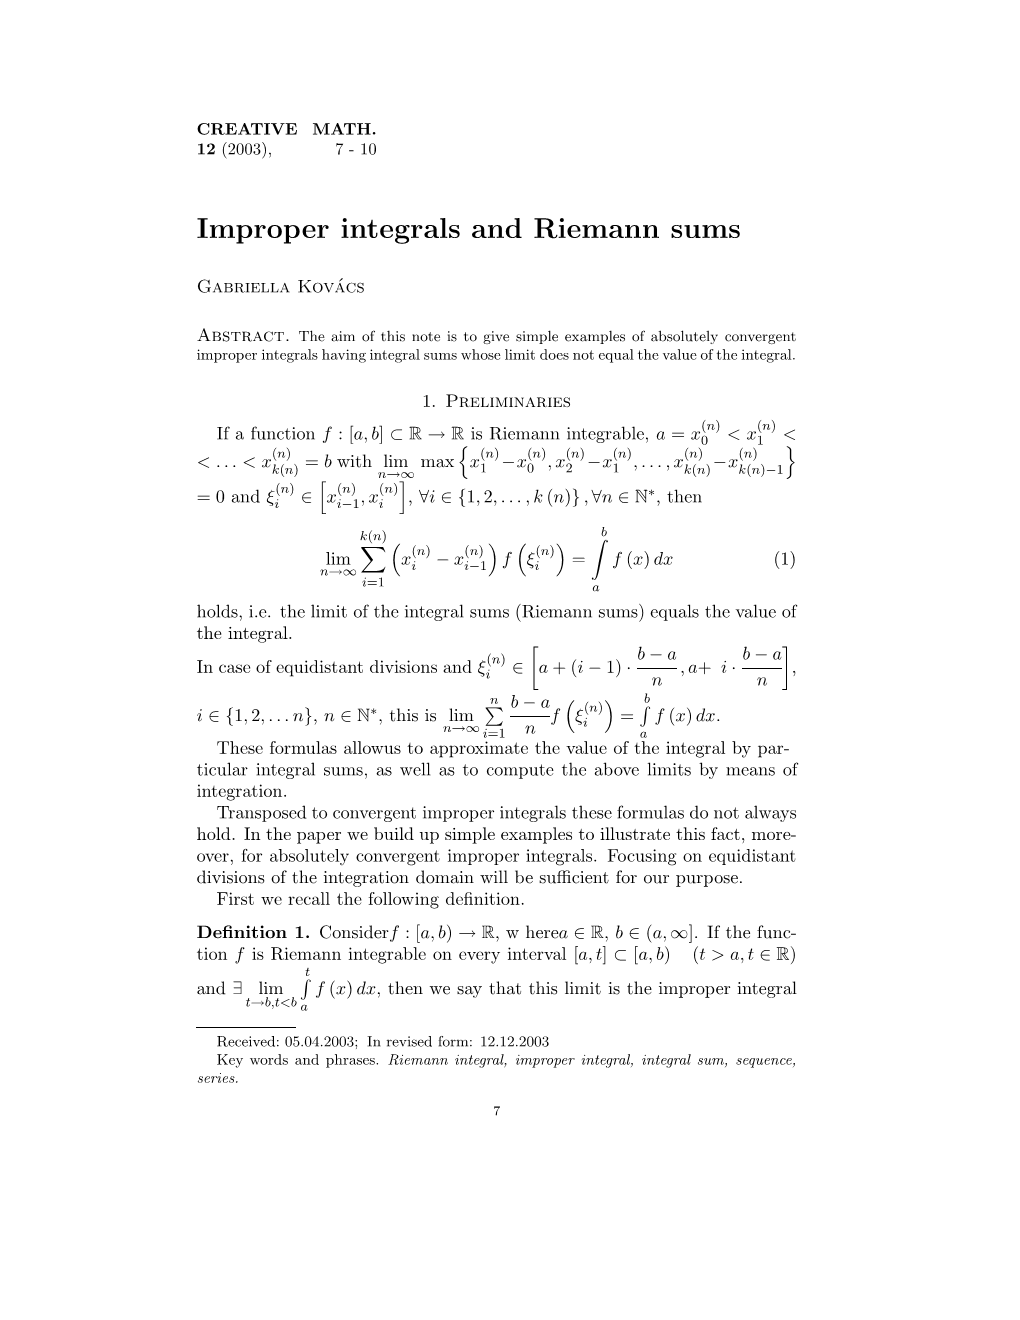 Improper Integrals and Riemann Sums